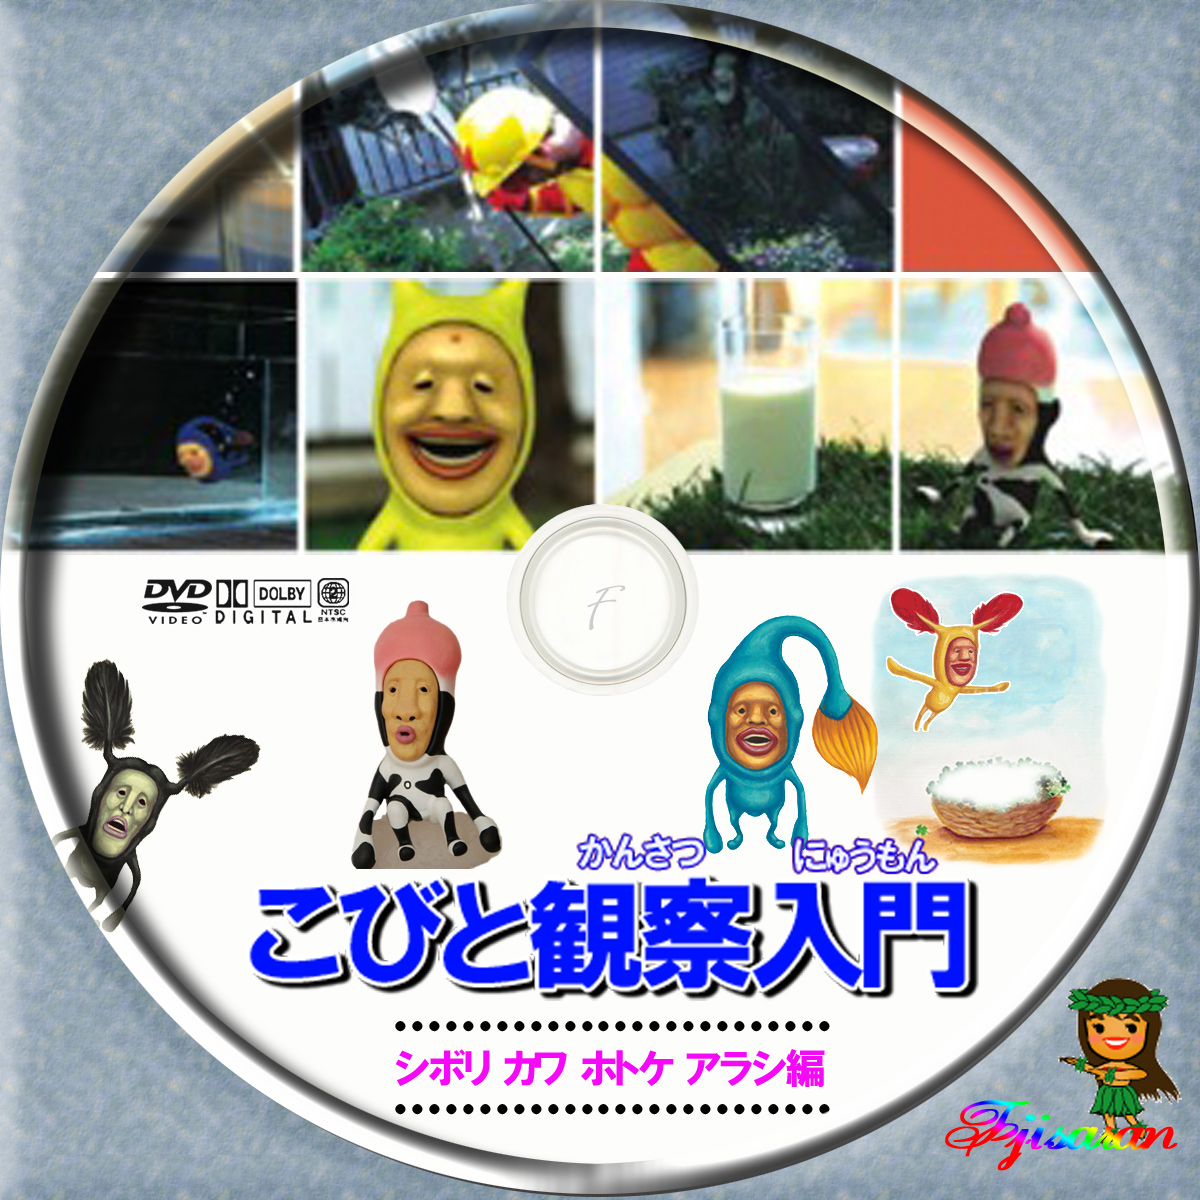 こびとづかん DVDこびと観察入門 シボリケダマBOX - ブルーレイ